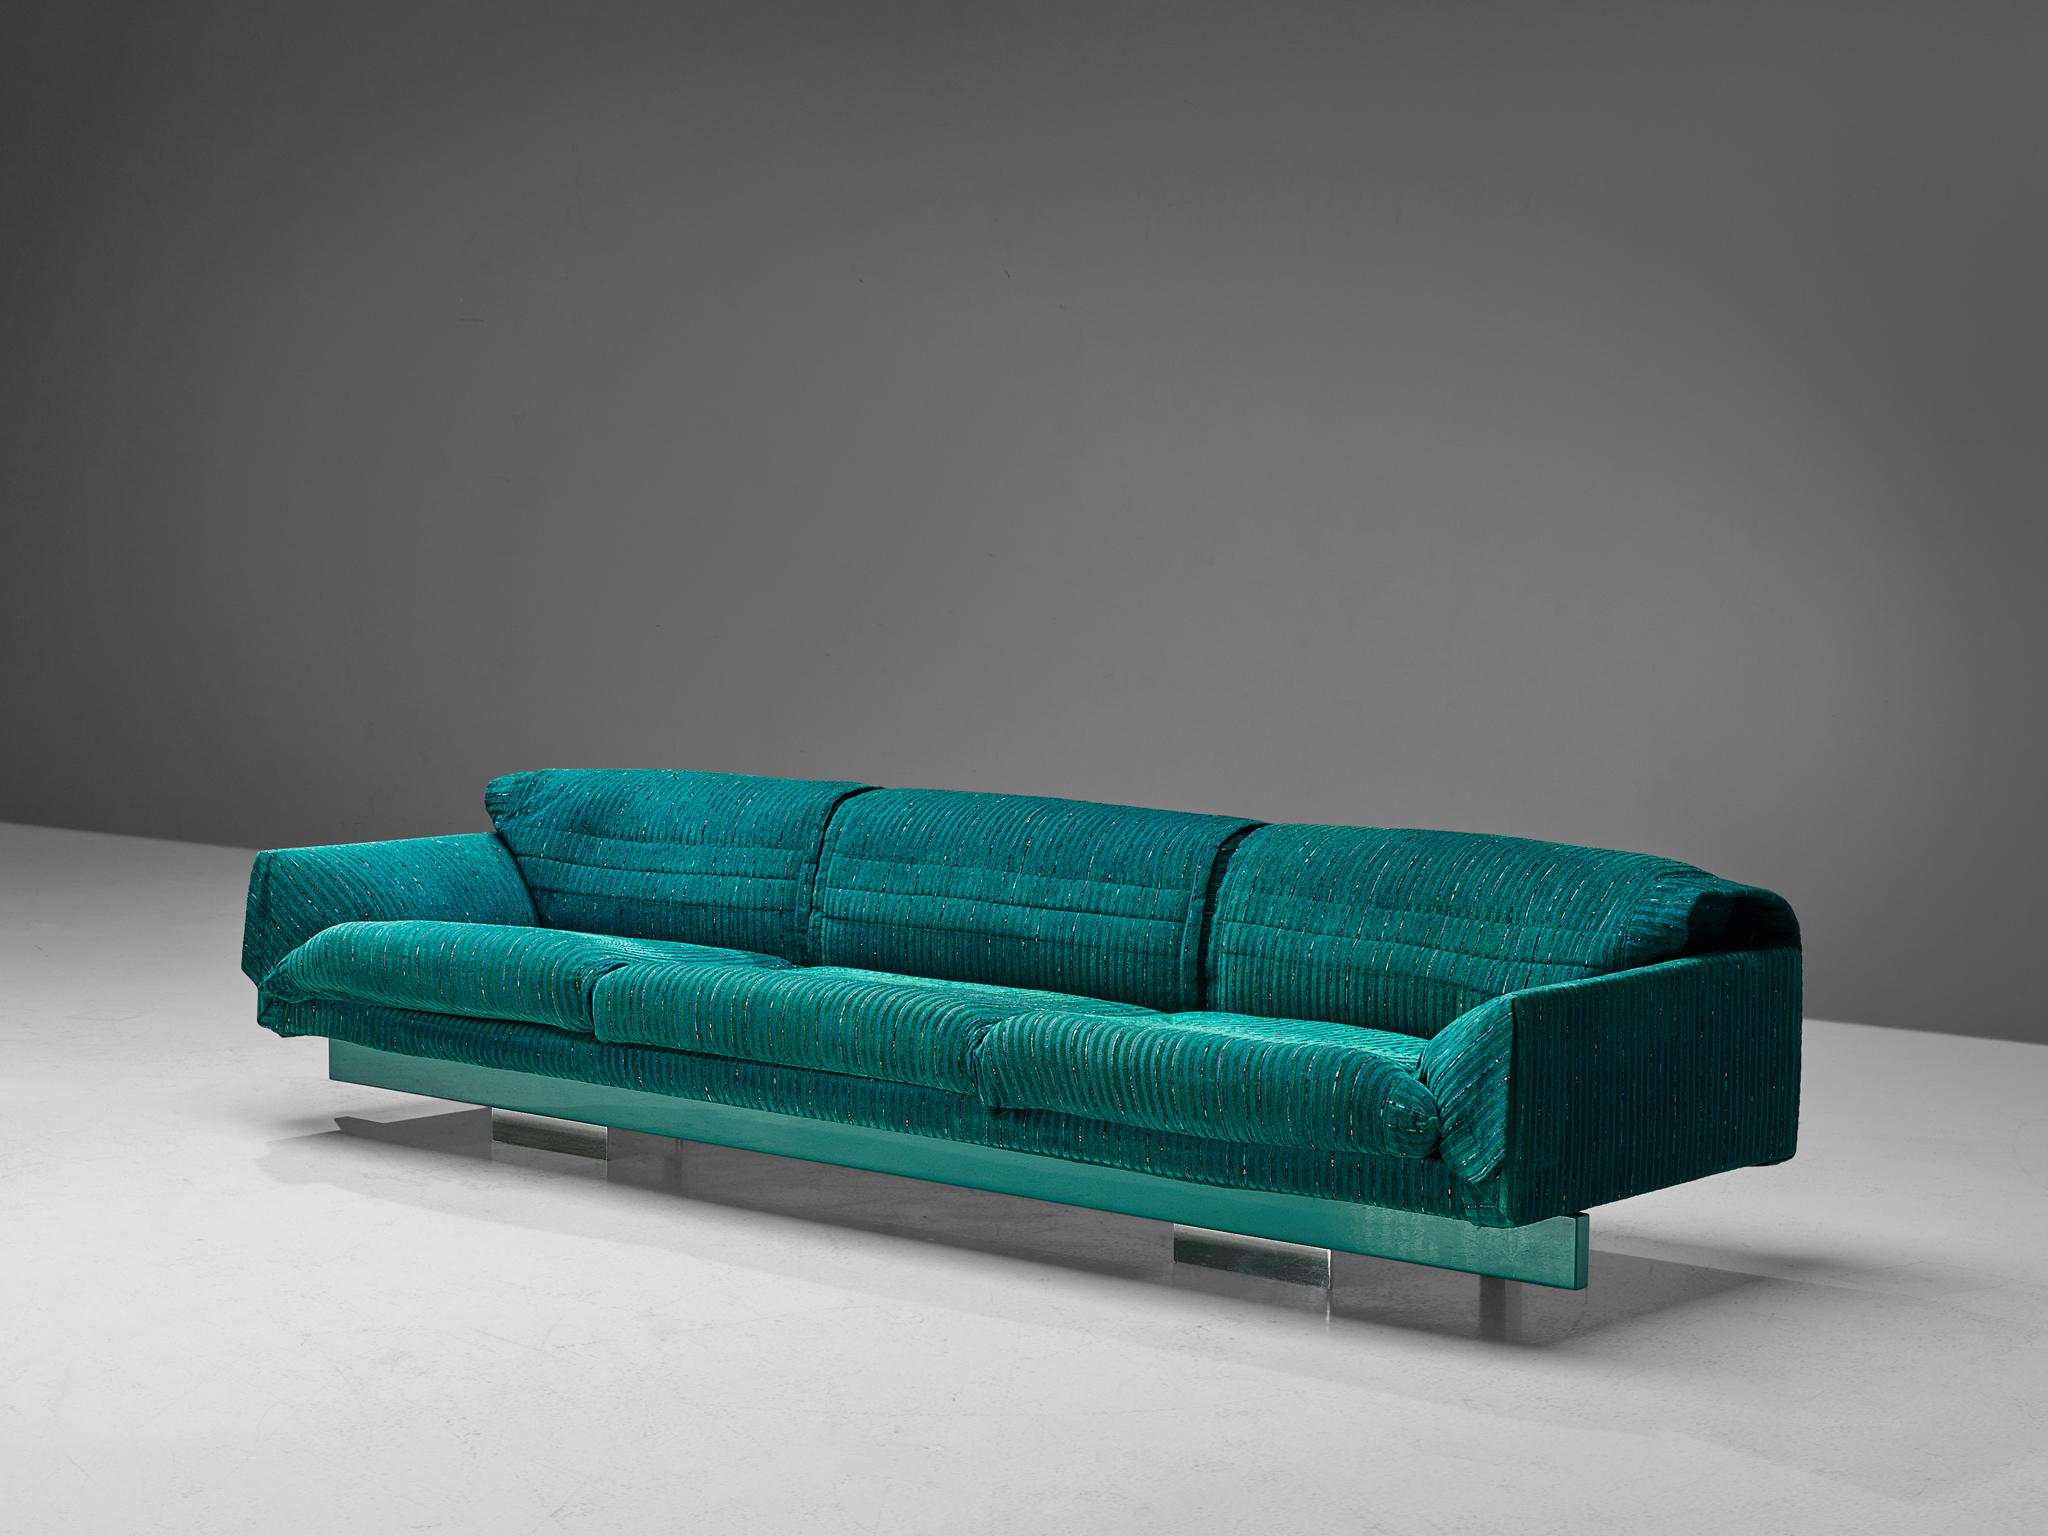 Saporiti, Sofa, Stoff, Metall, Italien, 1950er Jahre

Großes Sofa, hergestellt von Saporiti. Dieses Sofa ist so konzipiert, dass es bequem, weich und einladend ist. Er hat drei Sitze mit runden, schrägen Armlehnen, die ein entspanntes Aussehen